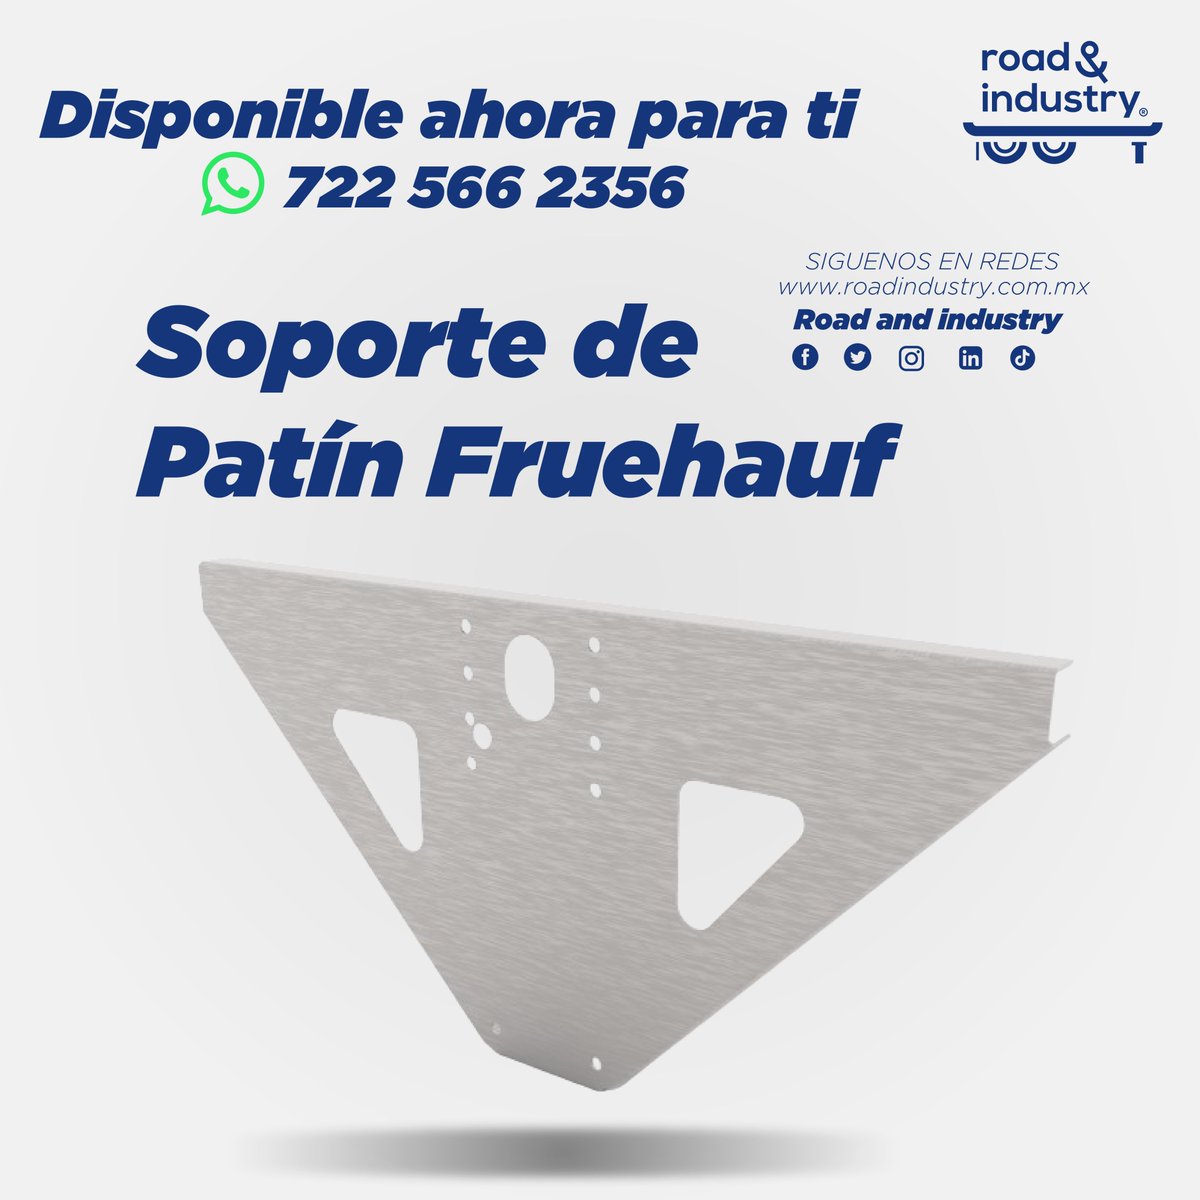 #Soporte para #patín #Fruehauf
Cotiza en #RoadIndustry :
📷722 566 2356
📷ventas@roadindustry.com.mx
#transportedecarga #trailer #remolque